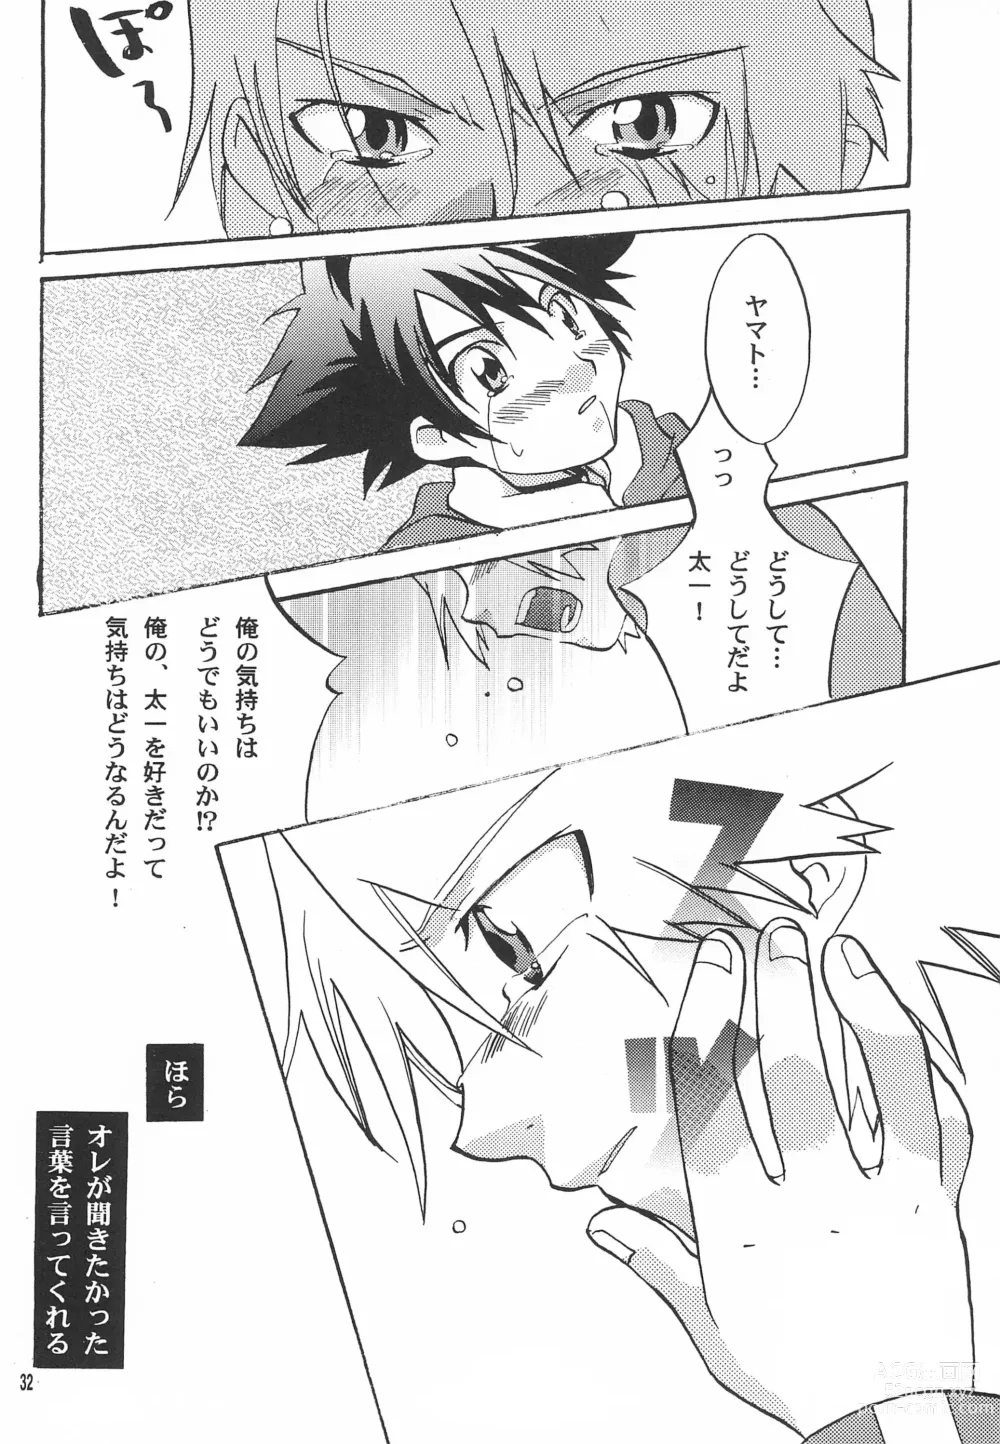 Page 34 of doujinshi Utsukushiki Samazama no Yume